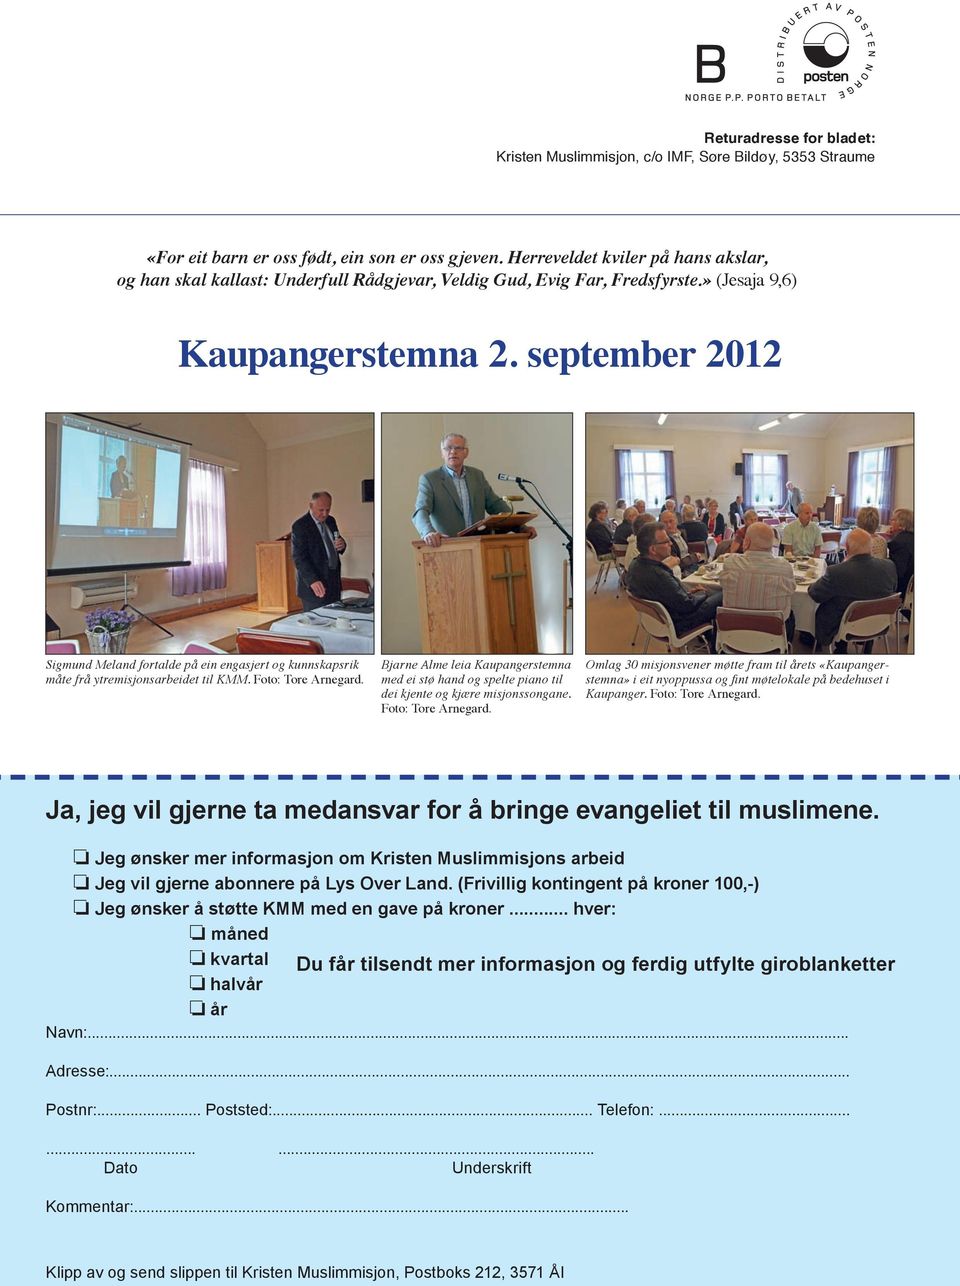 september 2012 Sigmund Meland fortalde på ein engasjert og kunnskapsrik måte frå ytremisjonsarbeidet til KMM. Foto: Tore Arnegard.